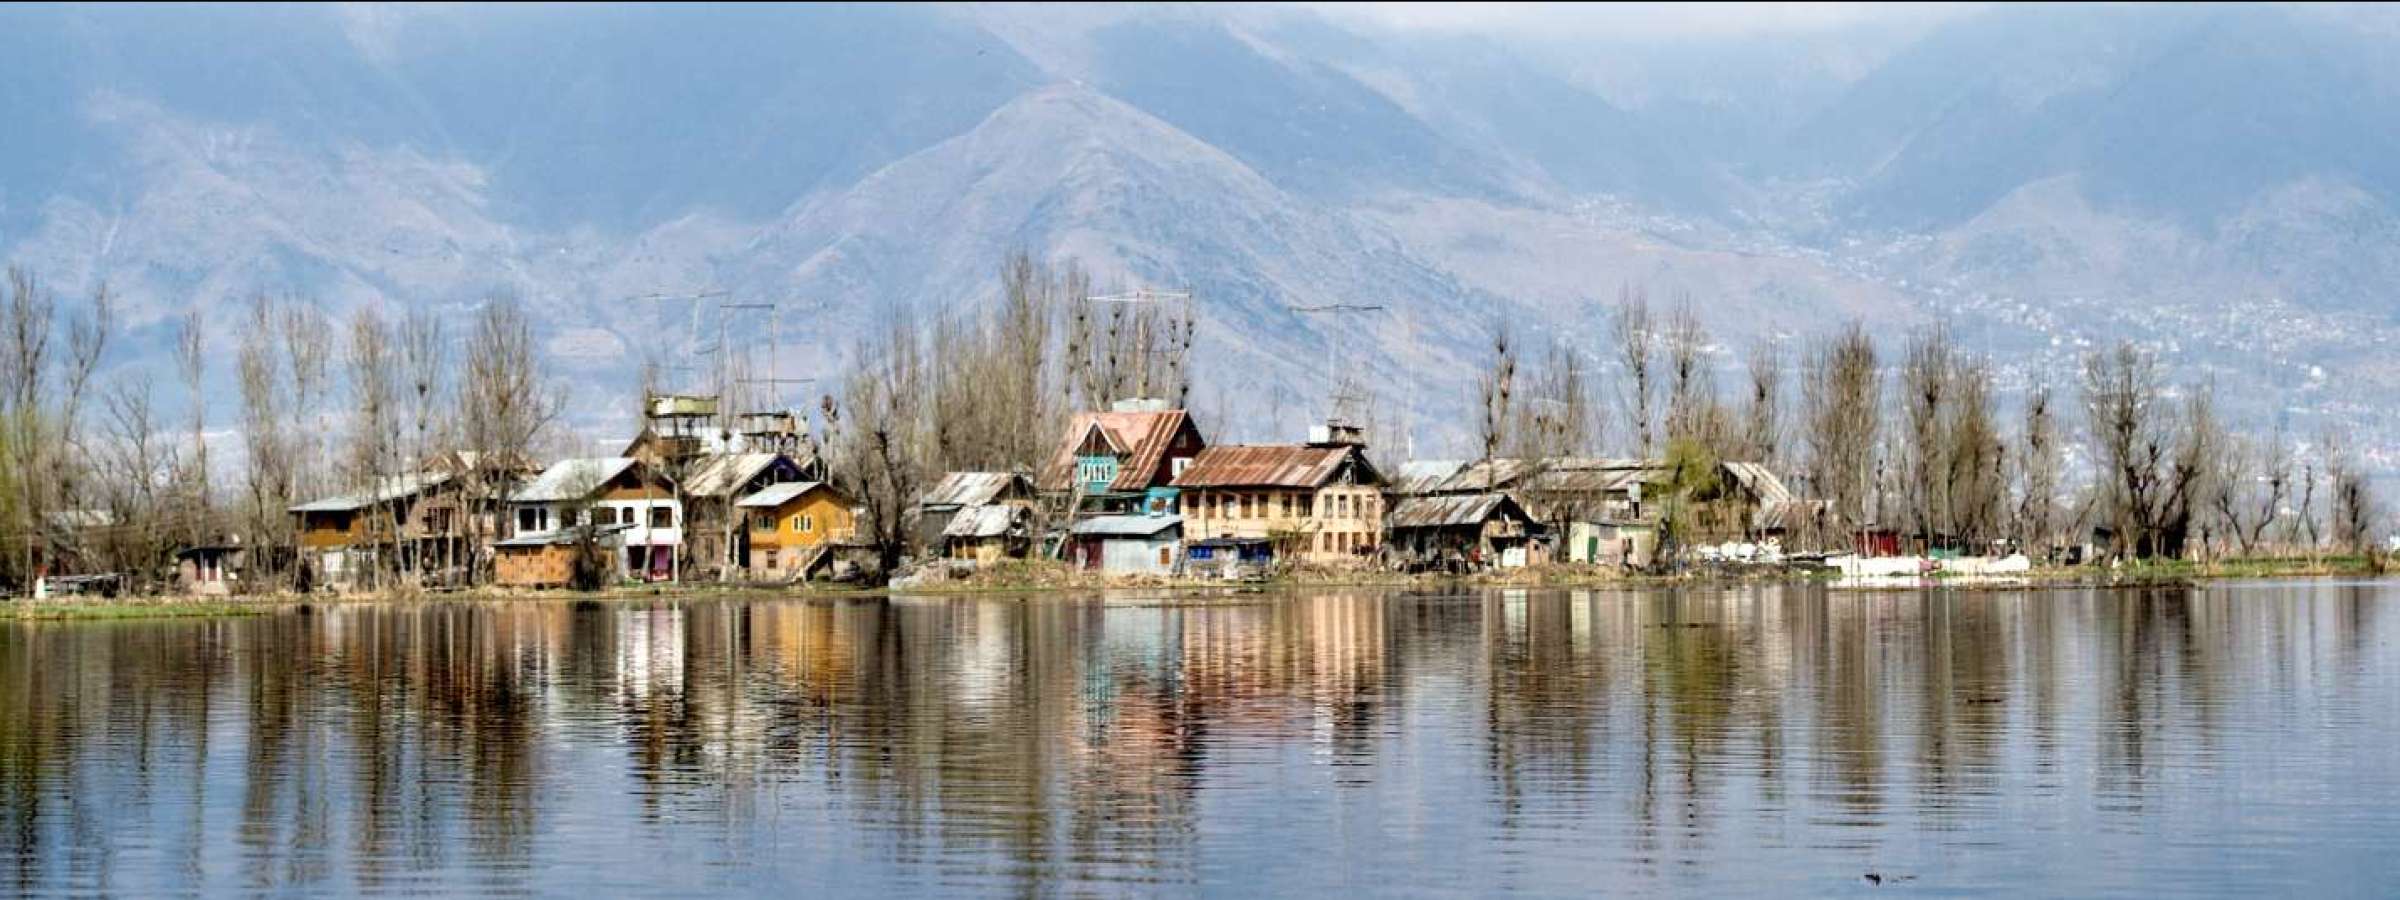 Village on a lake